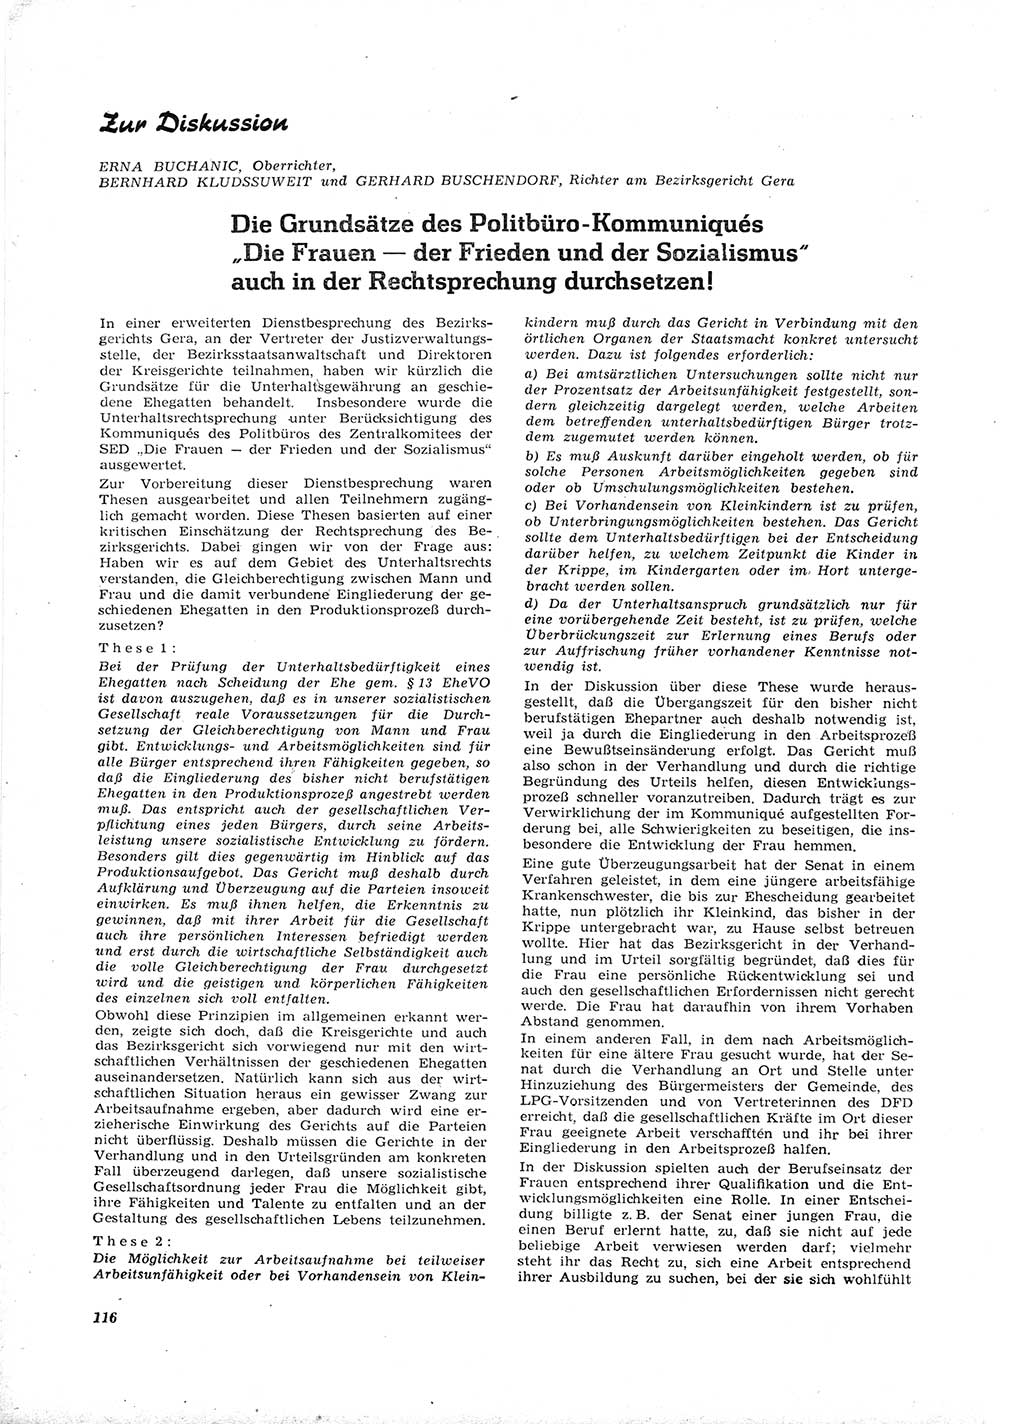 Neue Justiz (NJ), Zeitschrift für Recht und Rechtswissenschaft [Deutsche Demokratische Republik (DDR)], 16. Jahrgang 1962, Seite 116 (NJ DDR 1962, S. 116)